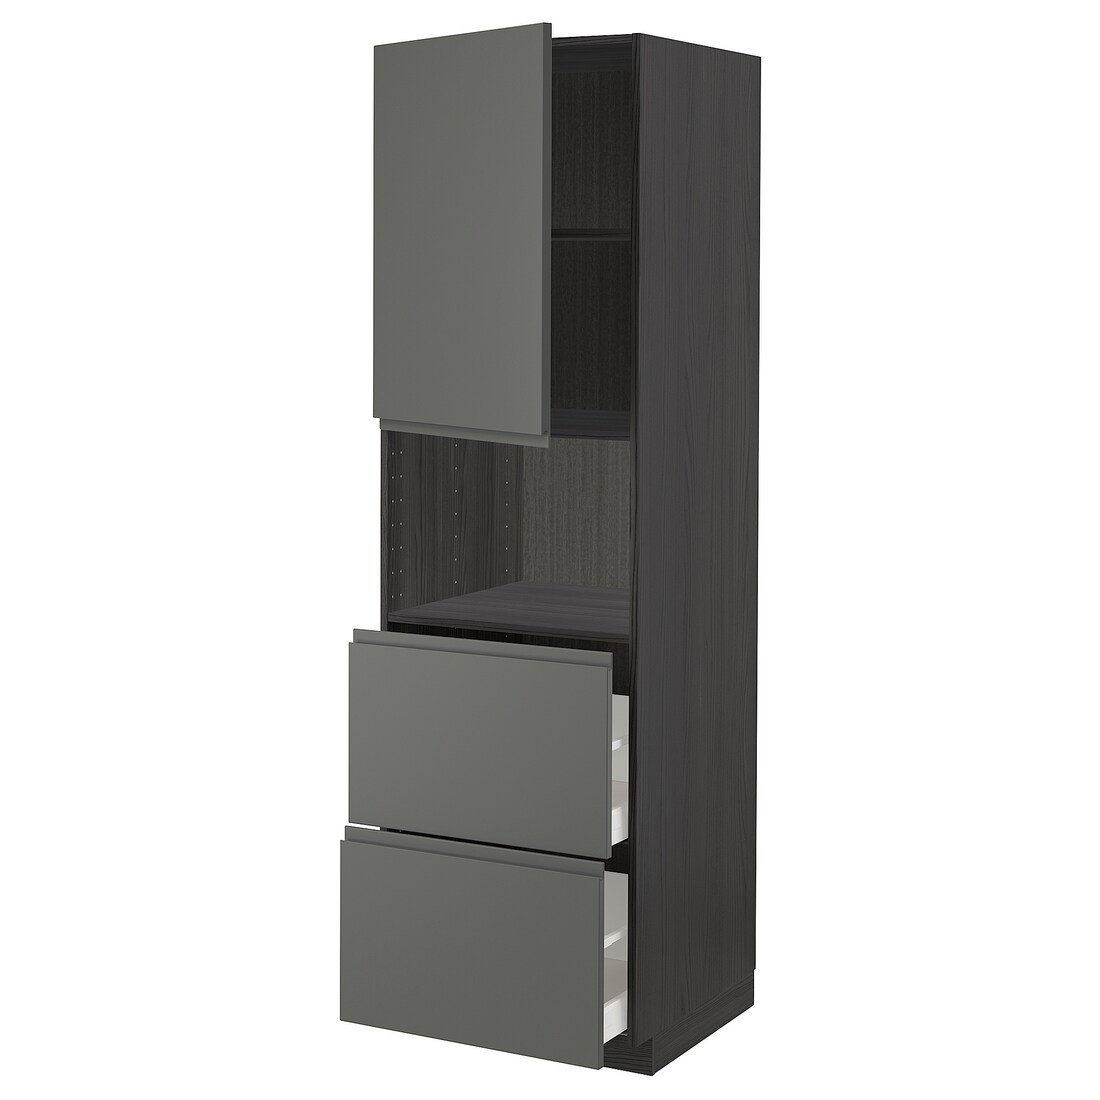 METOD МЕТОД / MAXIMERA МАКСИМЕРА Высокий шкаф для микроволновки с дверями / 2 ящика, черный / Voxtorp темно-серый, 60x60x200 см